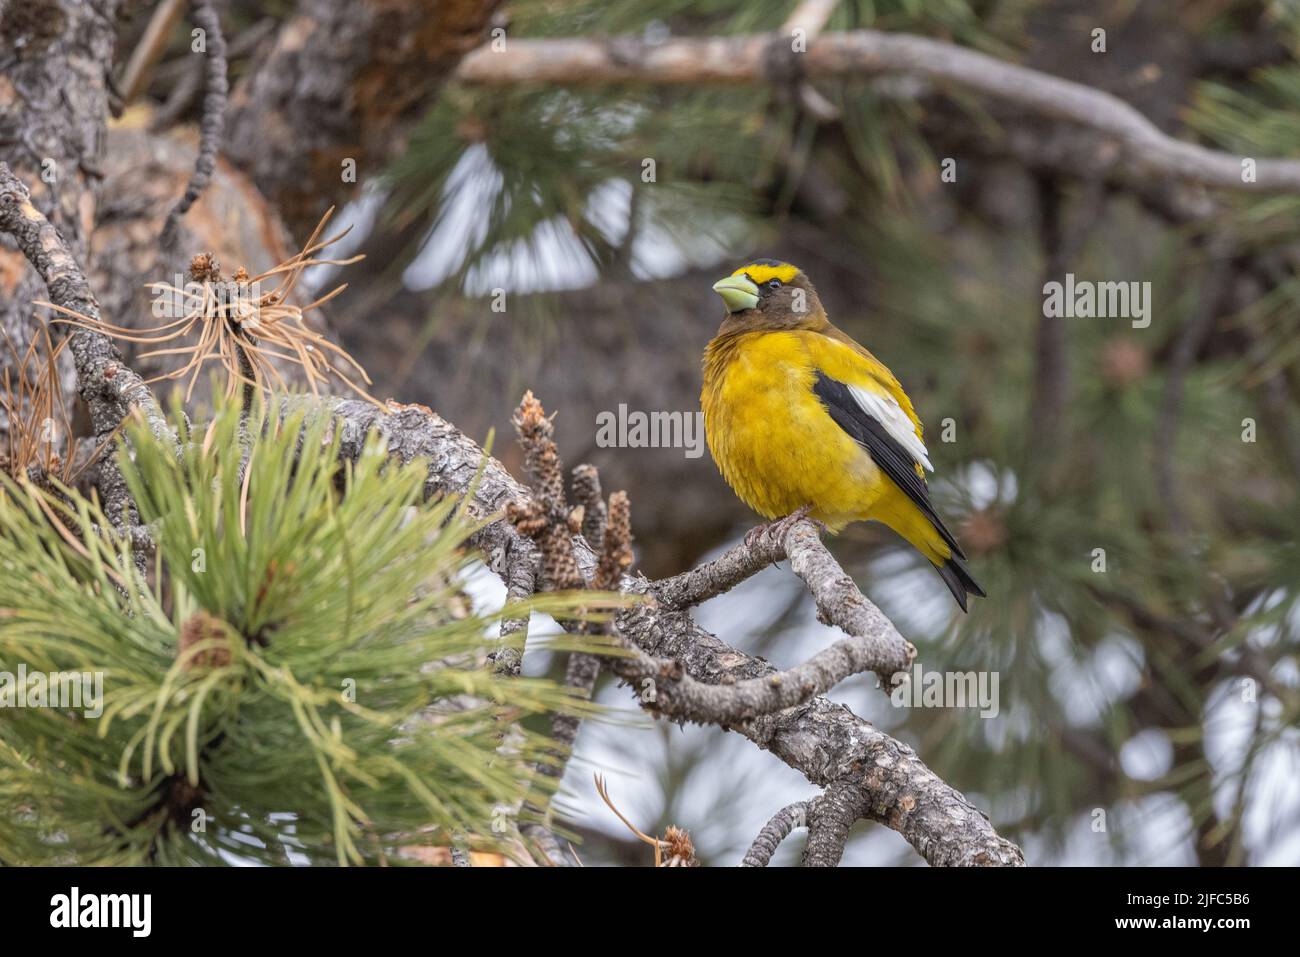 Il robber dalle voci gialle è una specie normale di uccelli nordamericani che può essere osservata comunemente in tutto il continente. Foto Stock